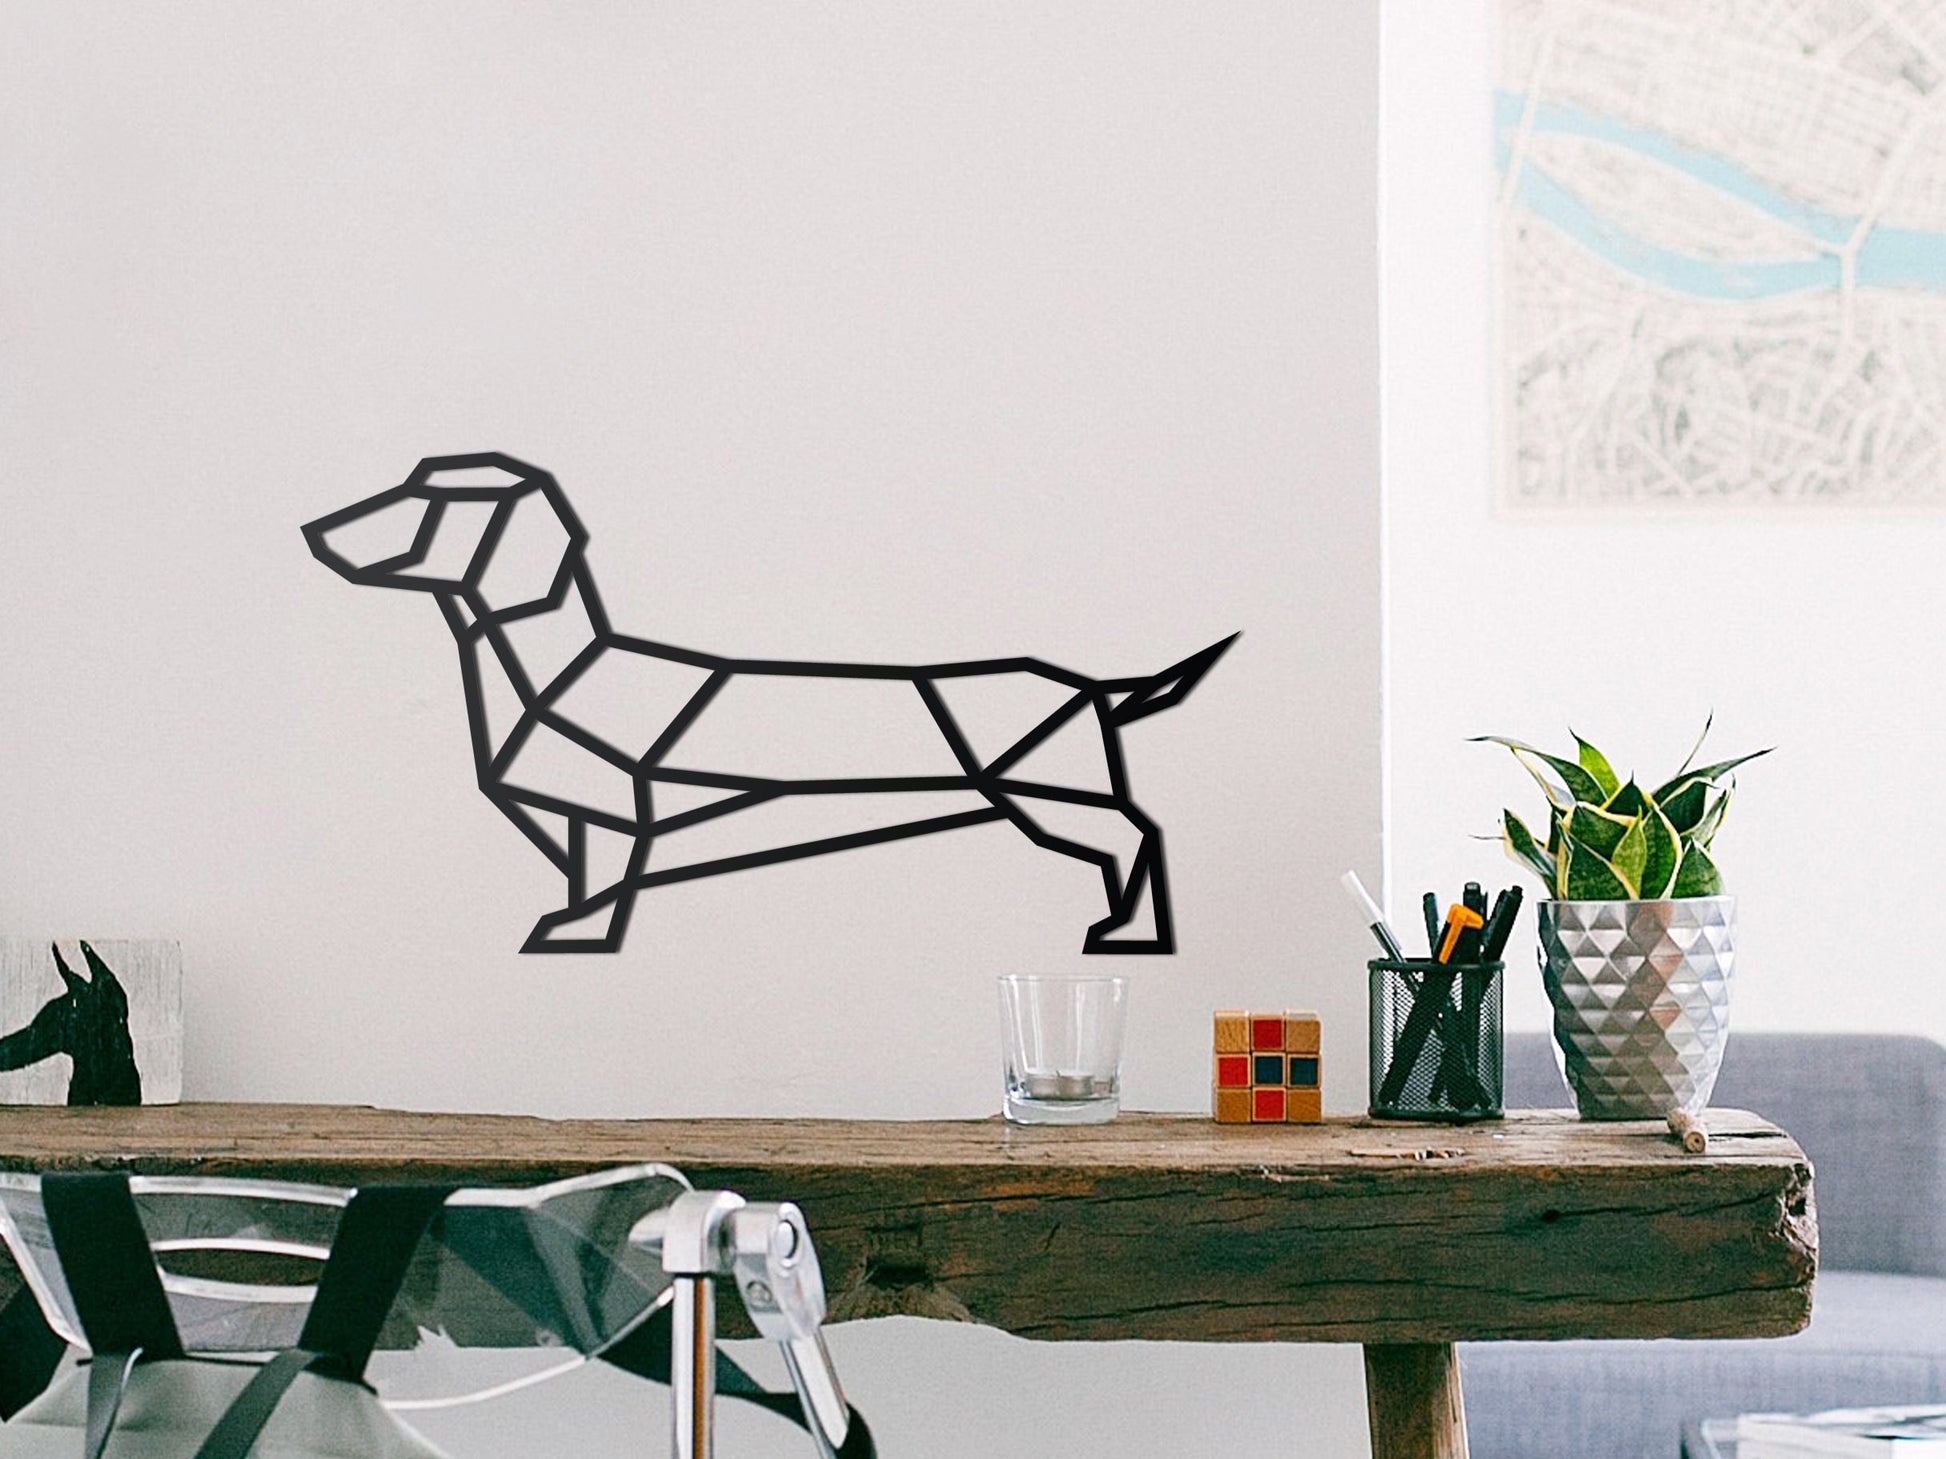 Wooden - Geometric - Wienerdog Sausage – IDEA SOLID Dachshund - dog wall decoration